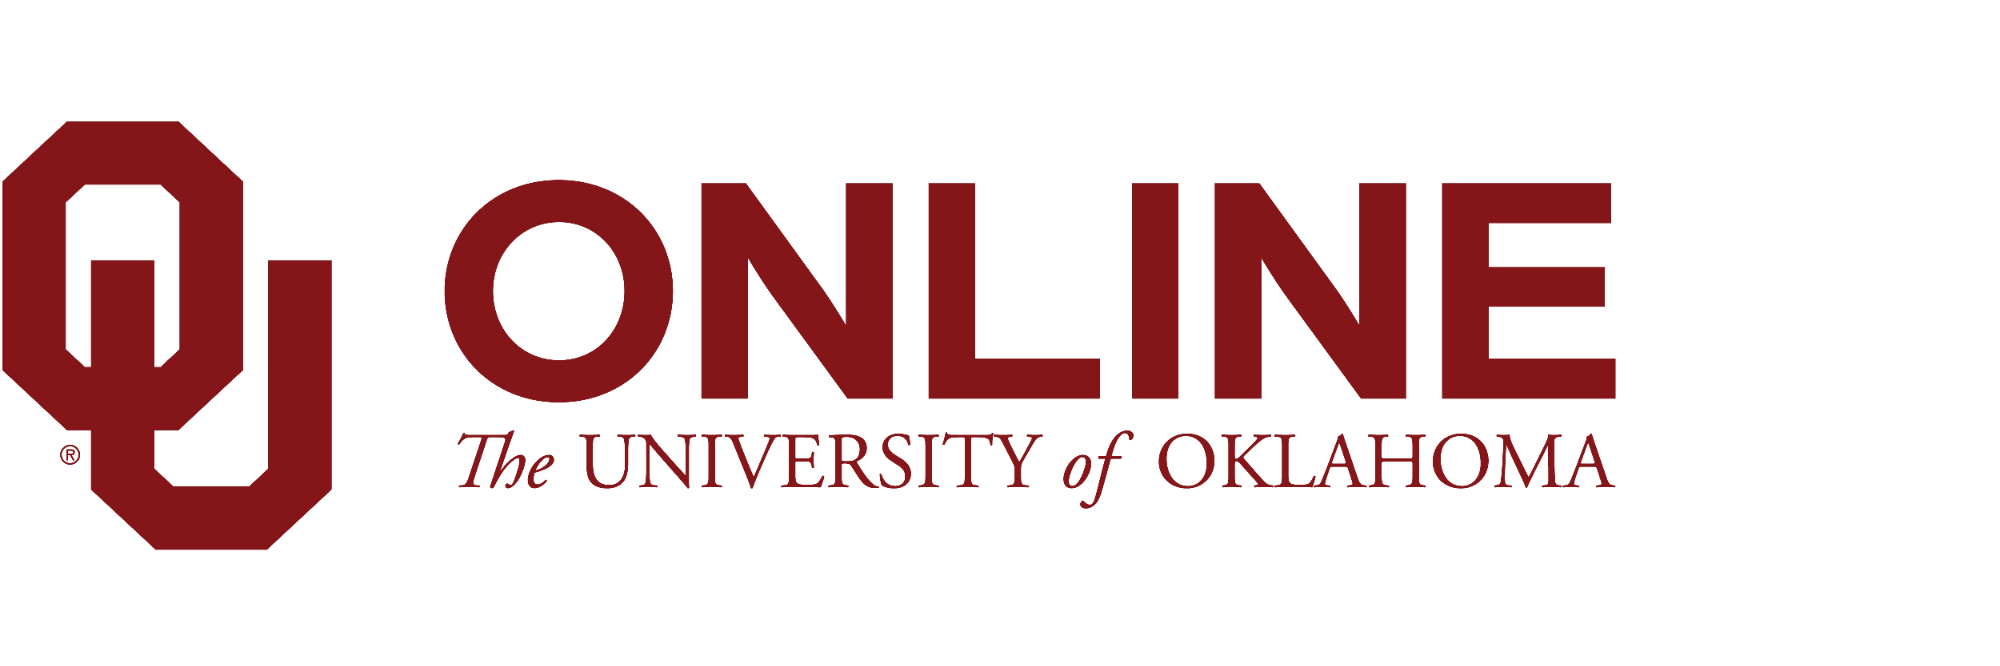 Interlocking OU Online website wordmark